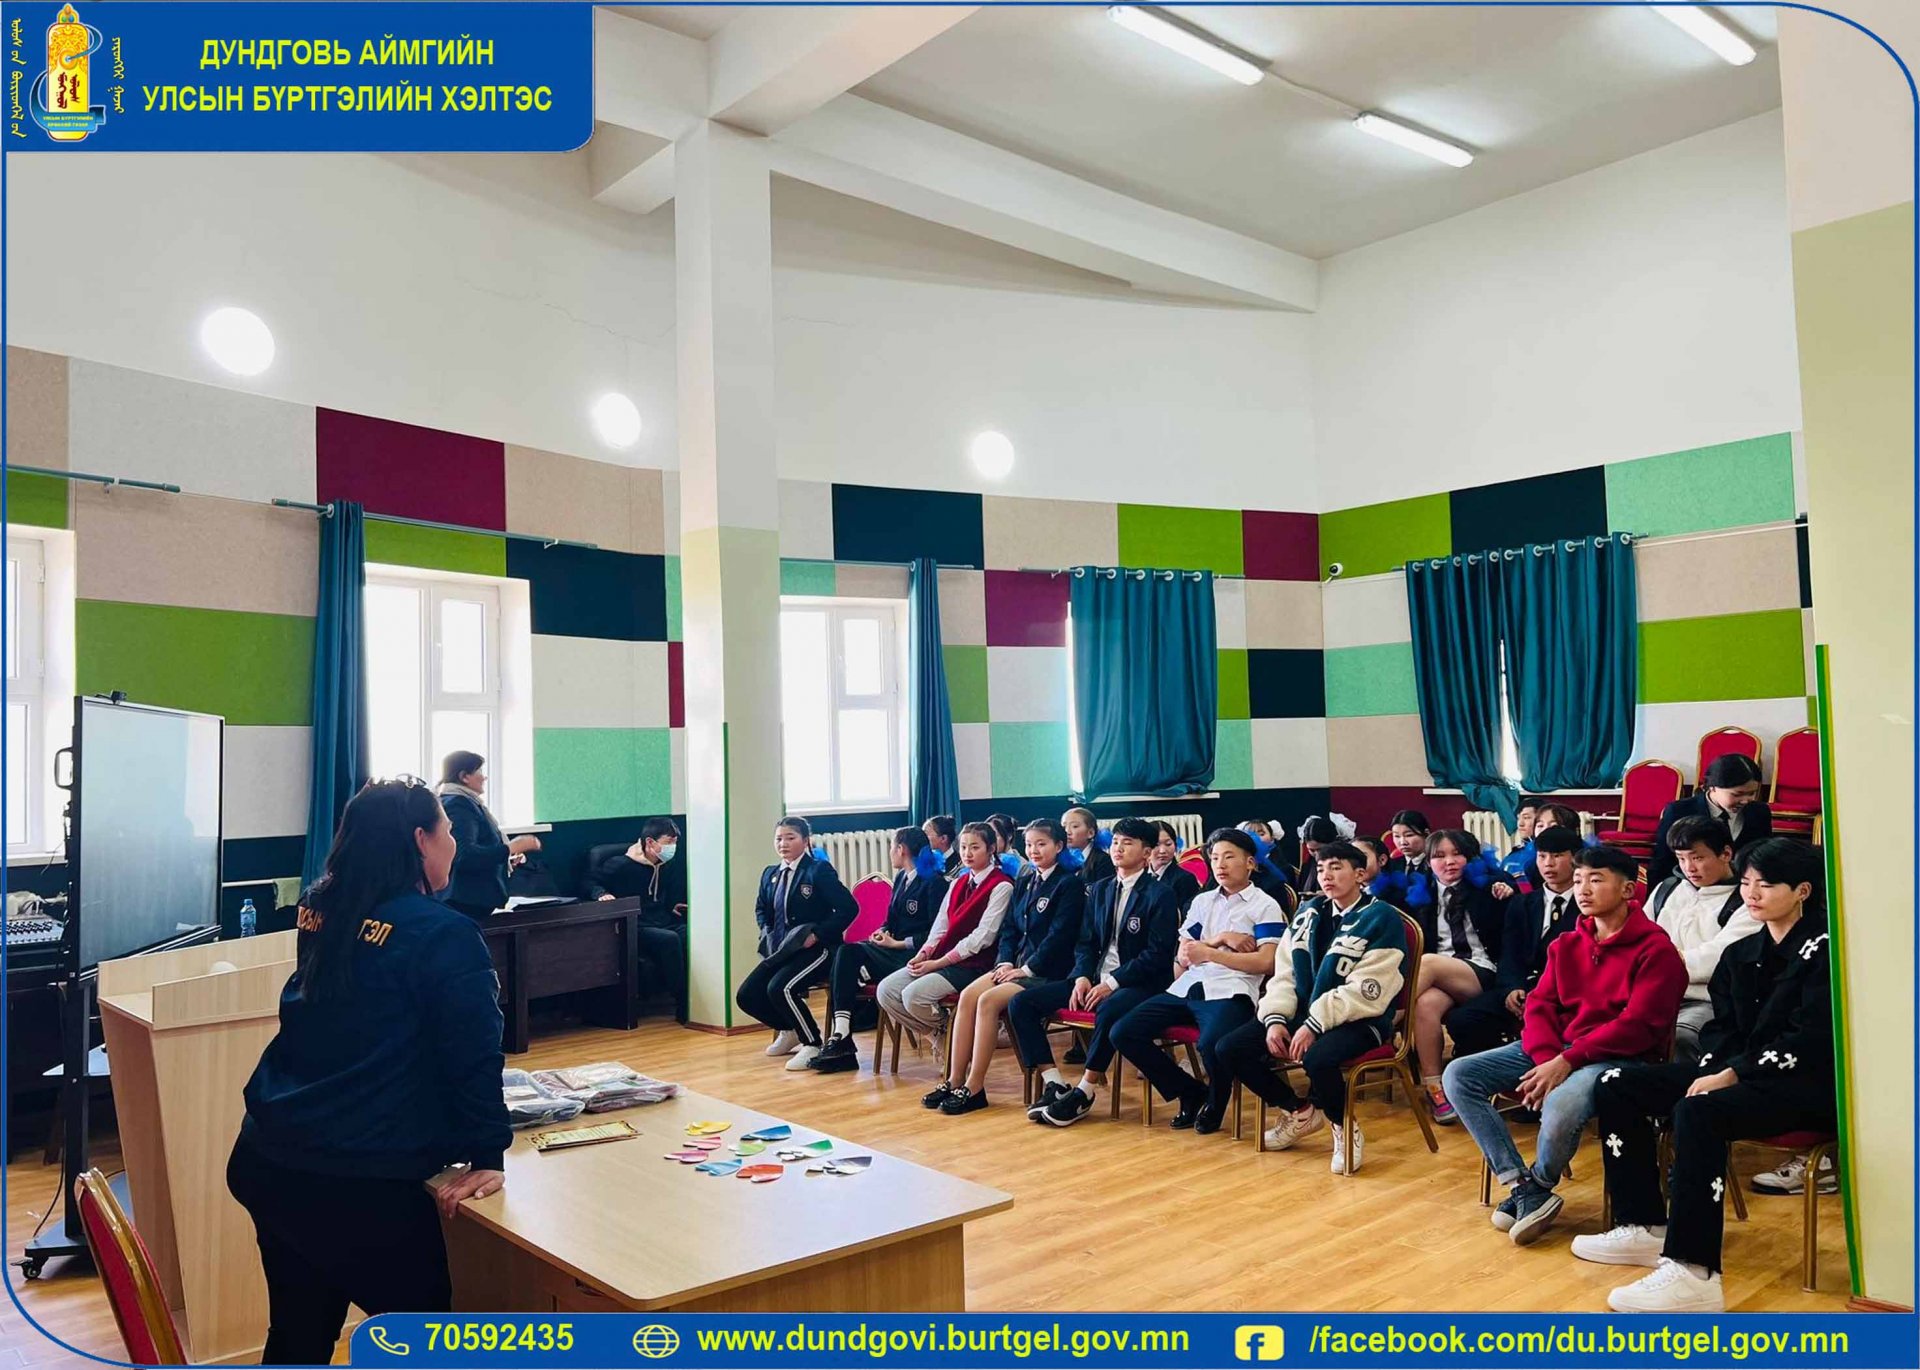 Дундговь аймгийн Улсын бүртгэлийн хэлтсээс зохион байгуулдаг 